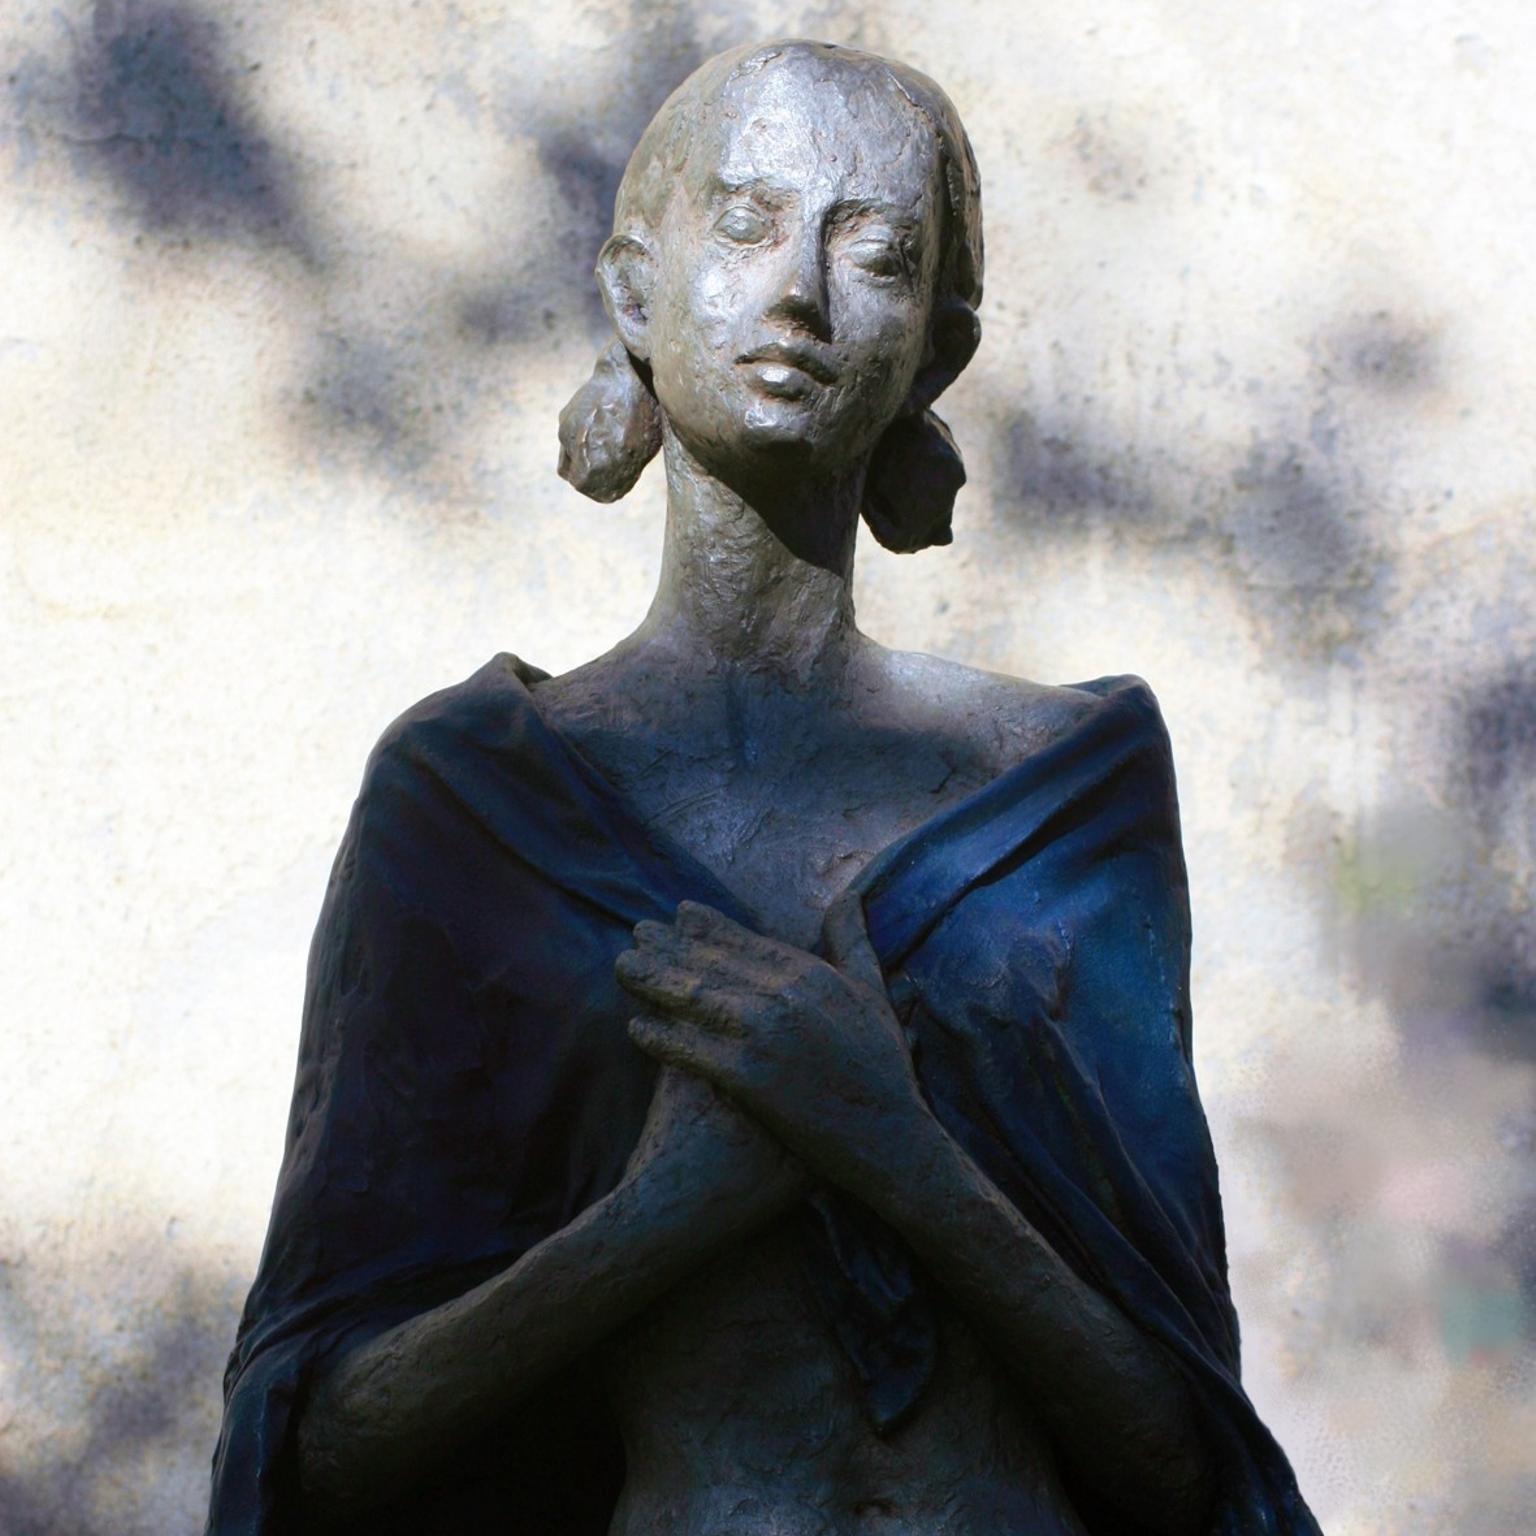 Woman with Blue Cape (Day after Christmas) - contemporary bronze sculpture  - Contemporary Sculpture by Susanne Kraisser